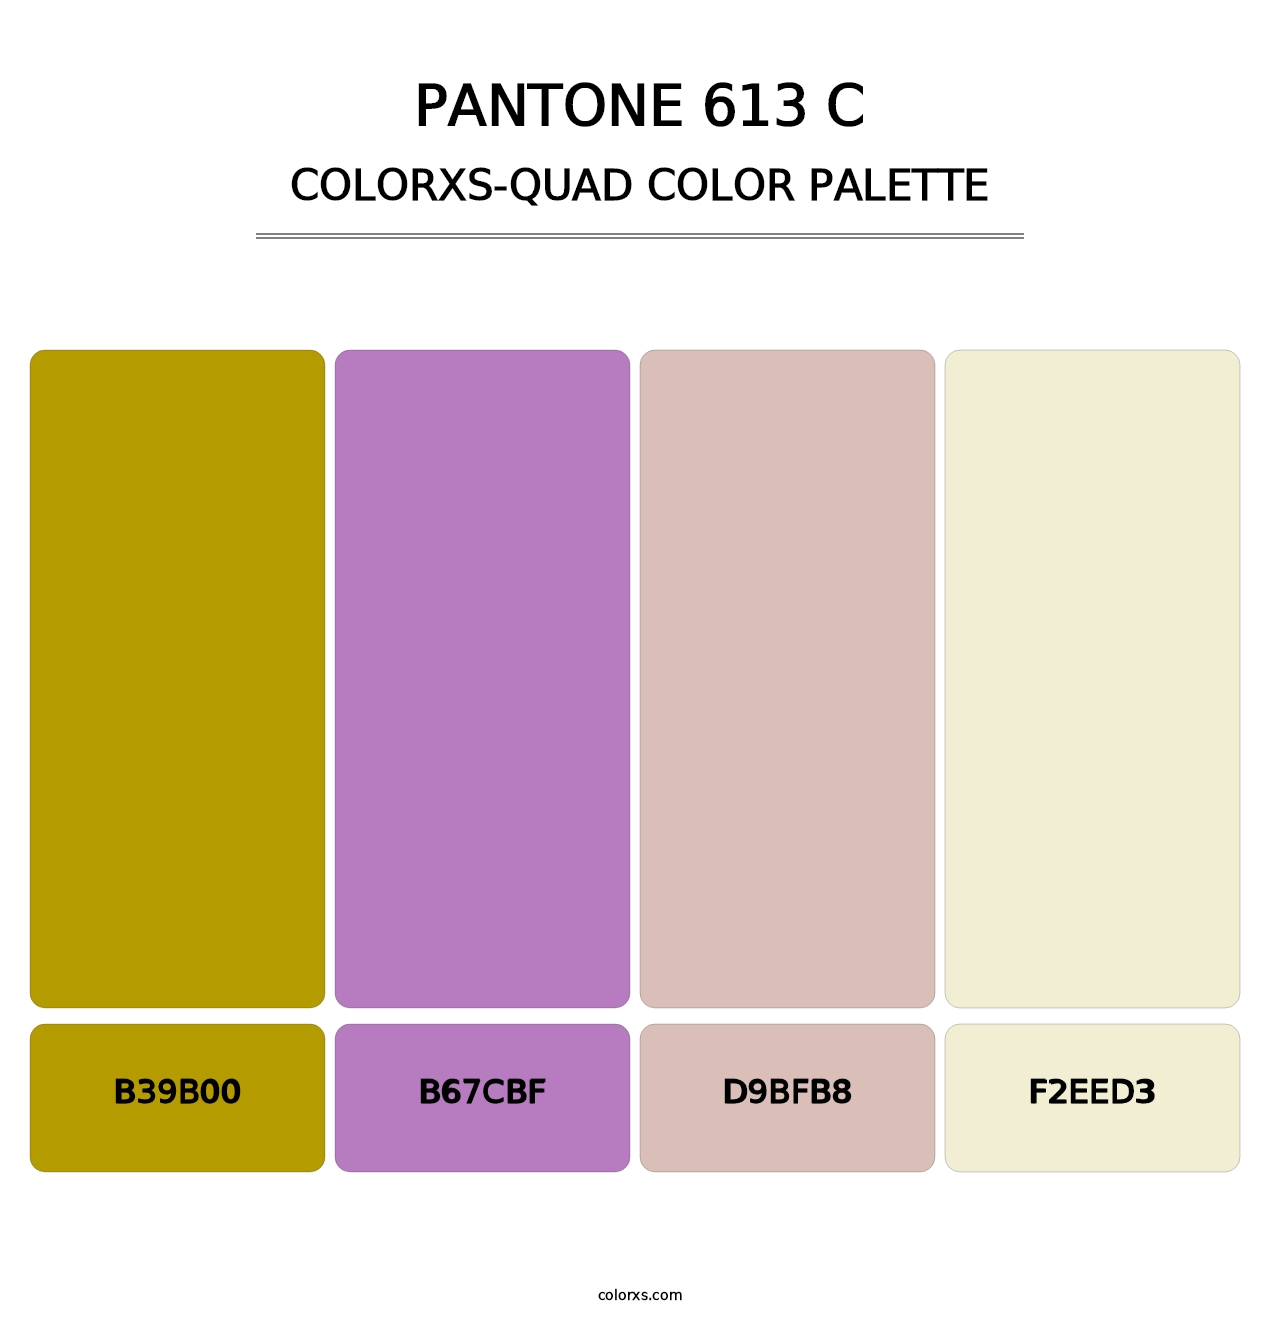 PANTONE 613 C - Colorxs Quad Palette